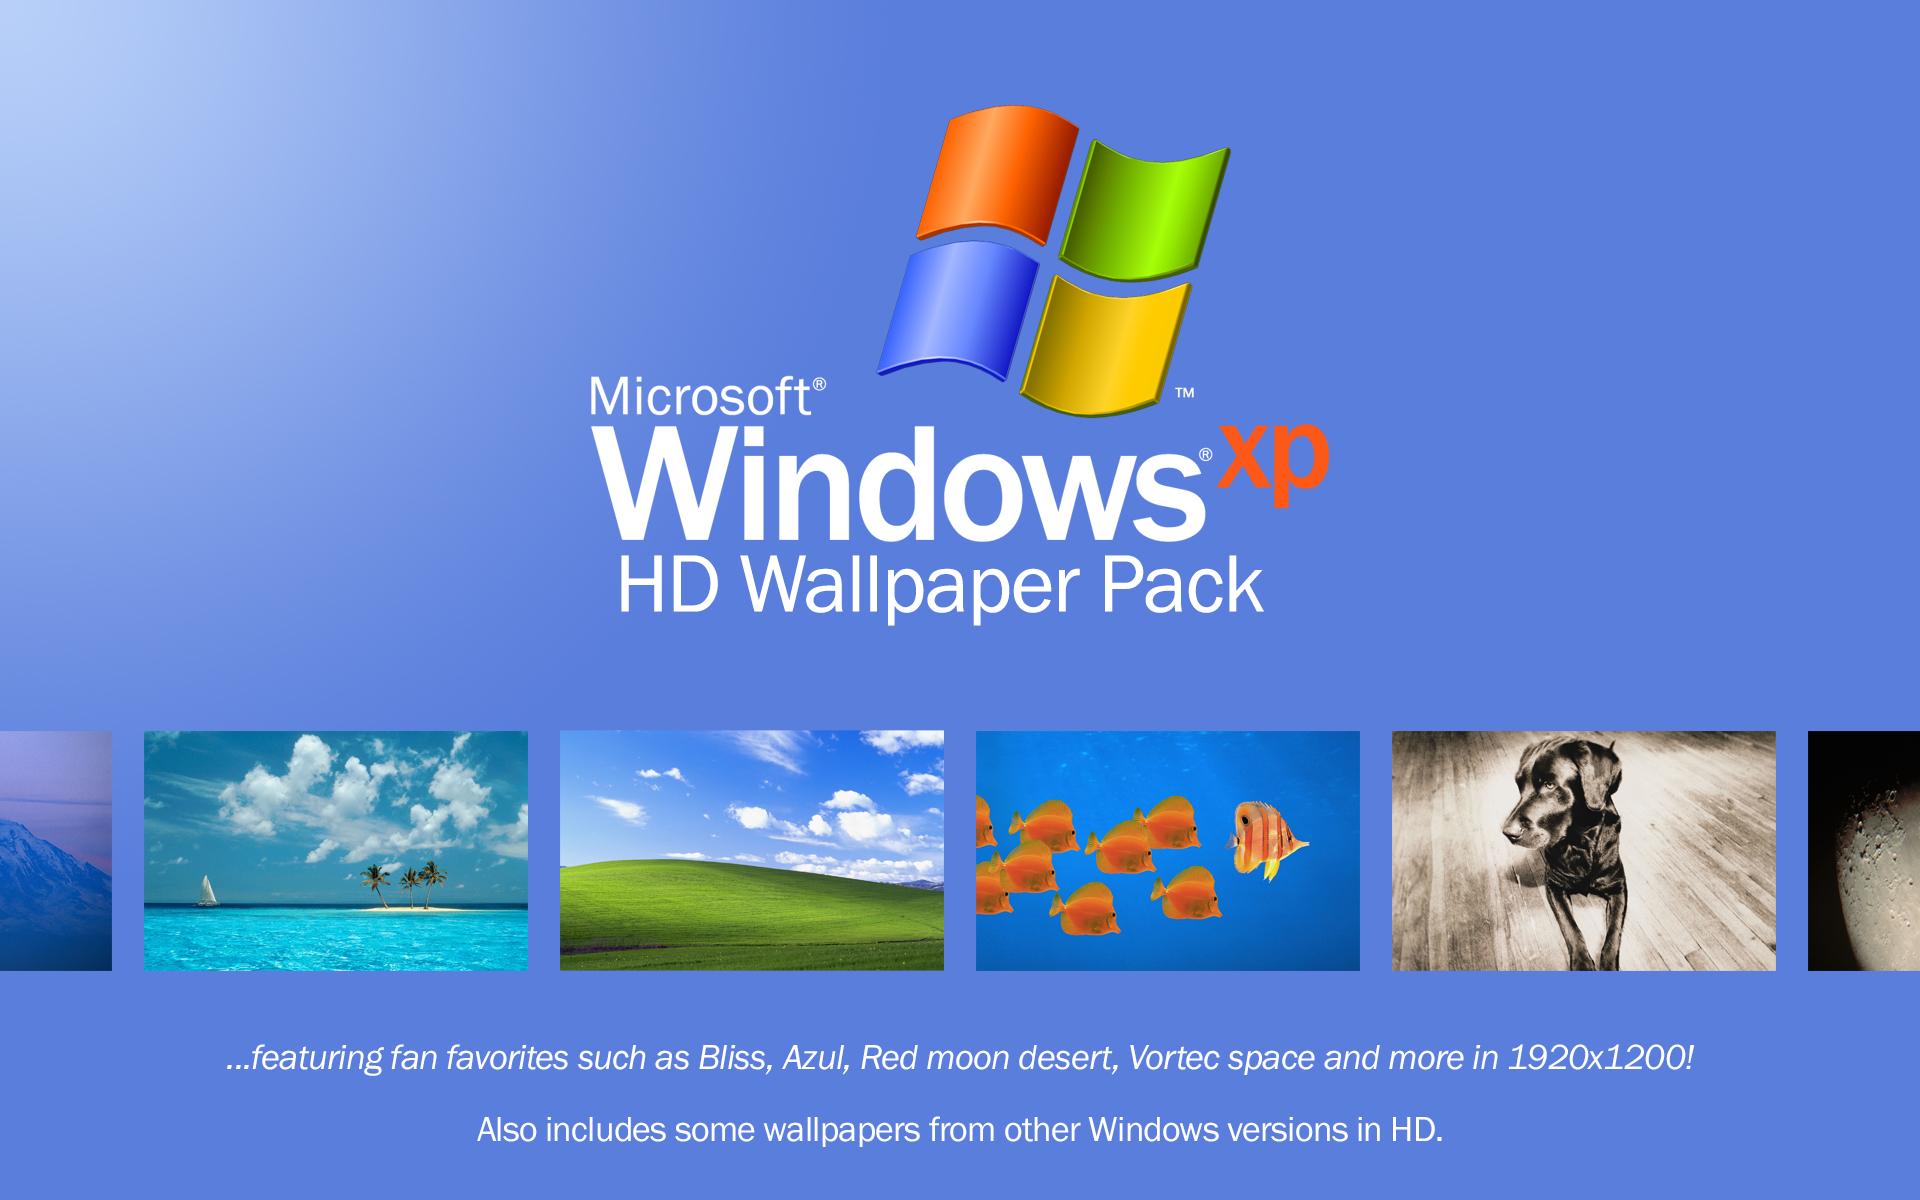 Cùng thưởng thức bộ sưu tập ảnh nền Windows XP HD độ nét cao và sinh động. Nét đẹp sắc nét, độ phân giải tuyệt vời cho phép bạn ngắm nhìn các hình ảnh chi tiết hơn, trở nên sống động hơn bao giờ hết. Chắc chắn sẽ làm bạn bất ngờ và thích thú.